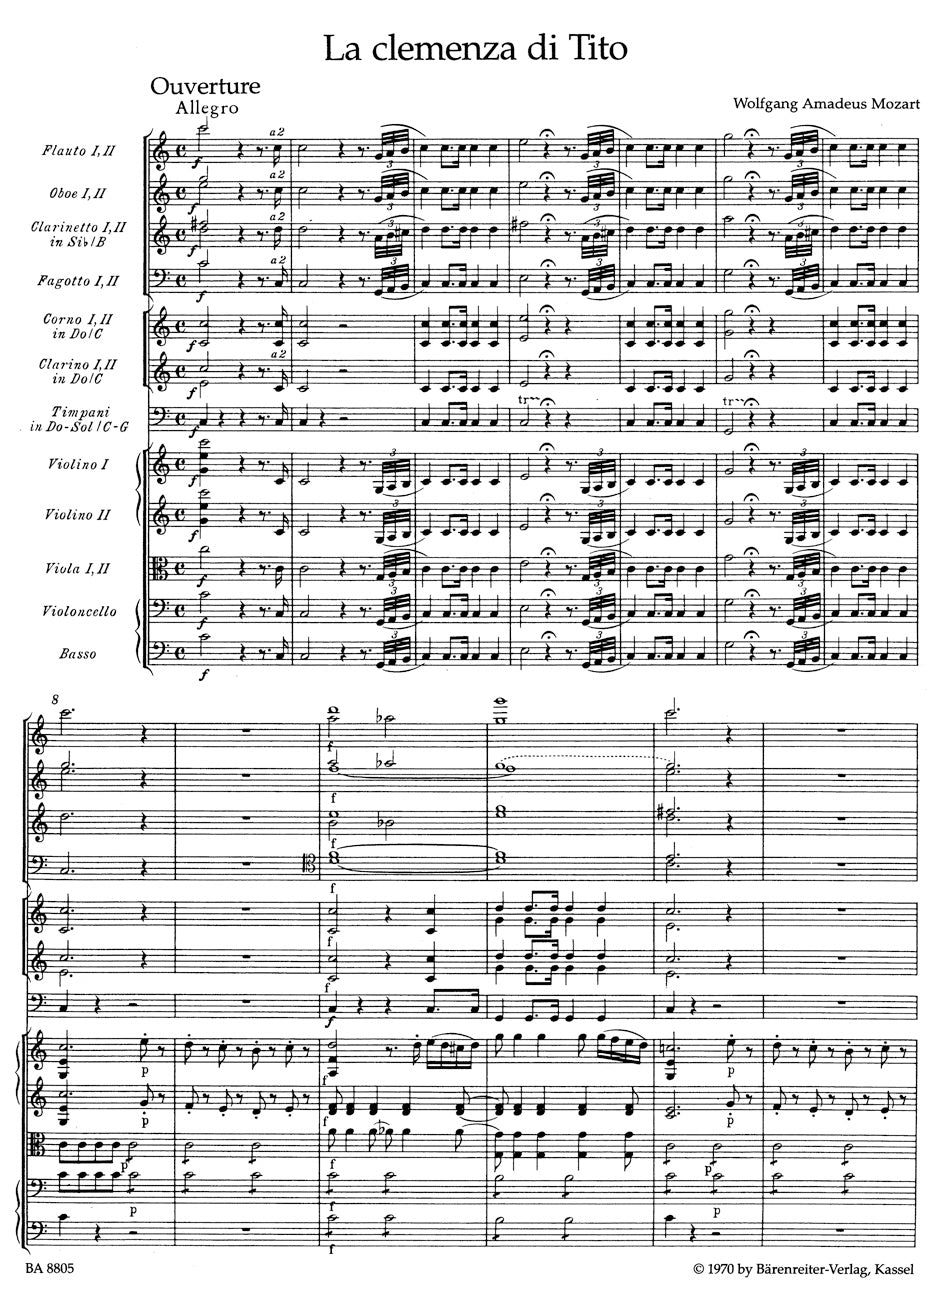 Mozart: Overture to La clemenza di Tito, K. 621